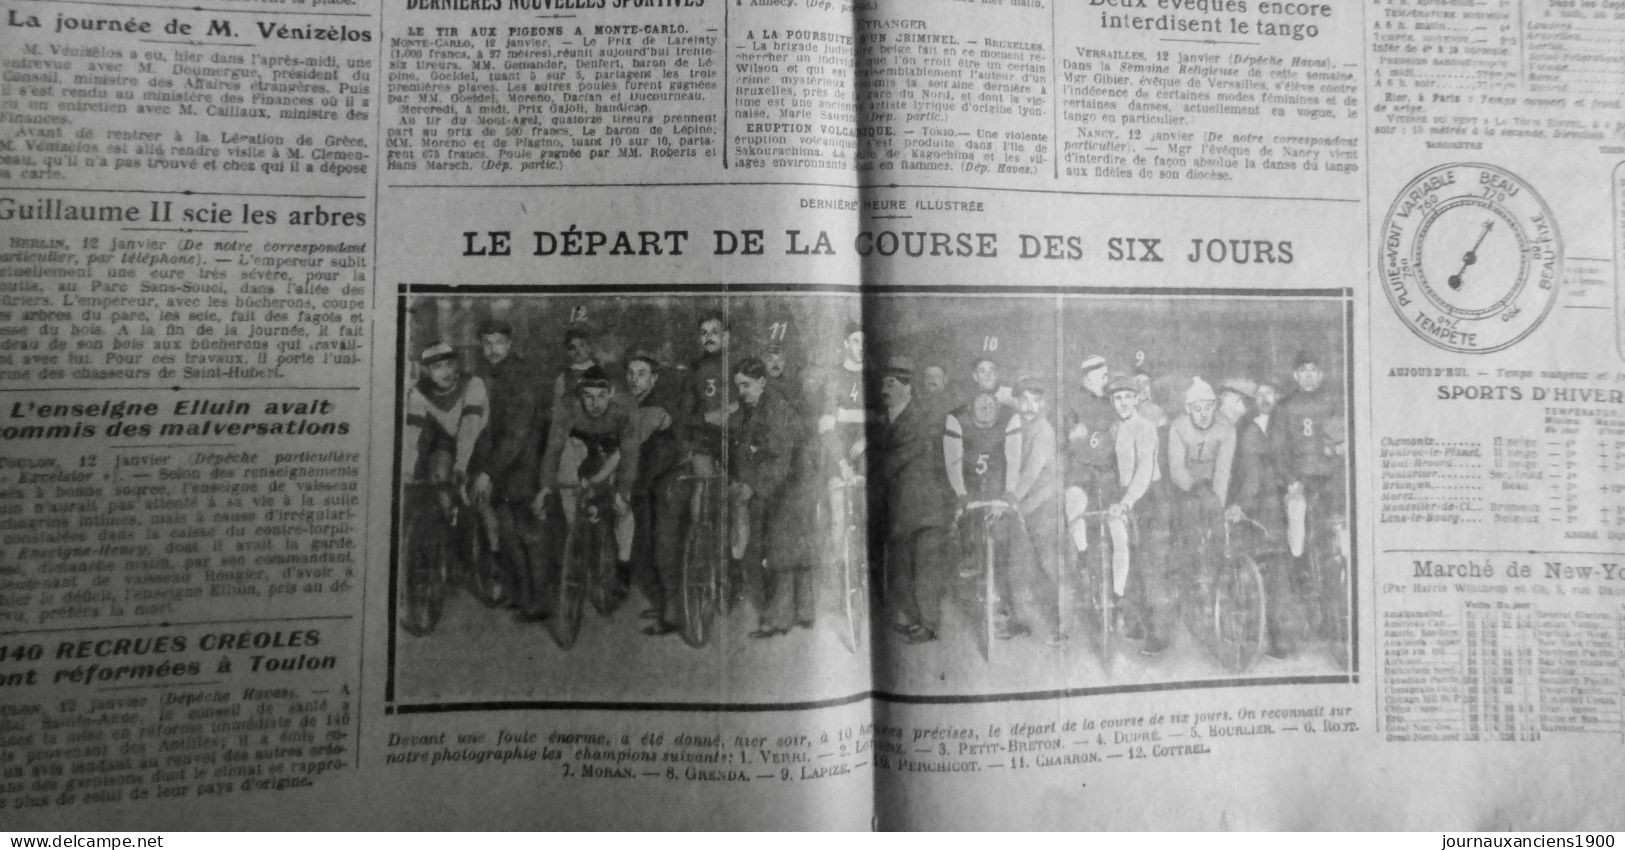 1914 EXCELSIOR ARTICLE DE PRESSE CYCLISME COURSE SIX JOURS VERRI 1 JOURNAL ANCIE - Diapositivas De Vidrio